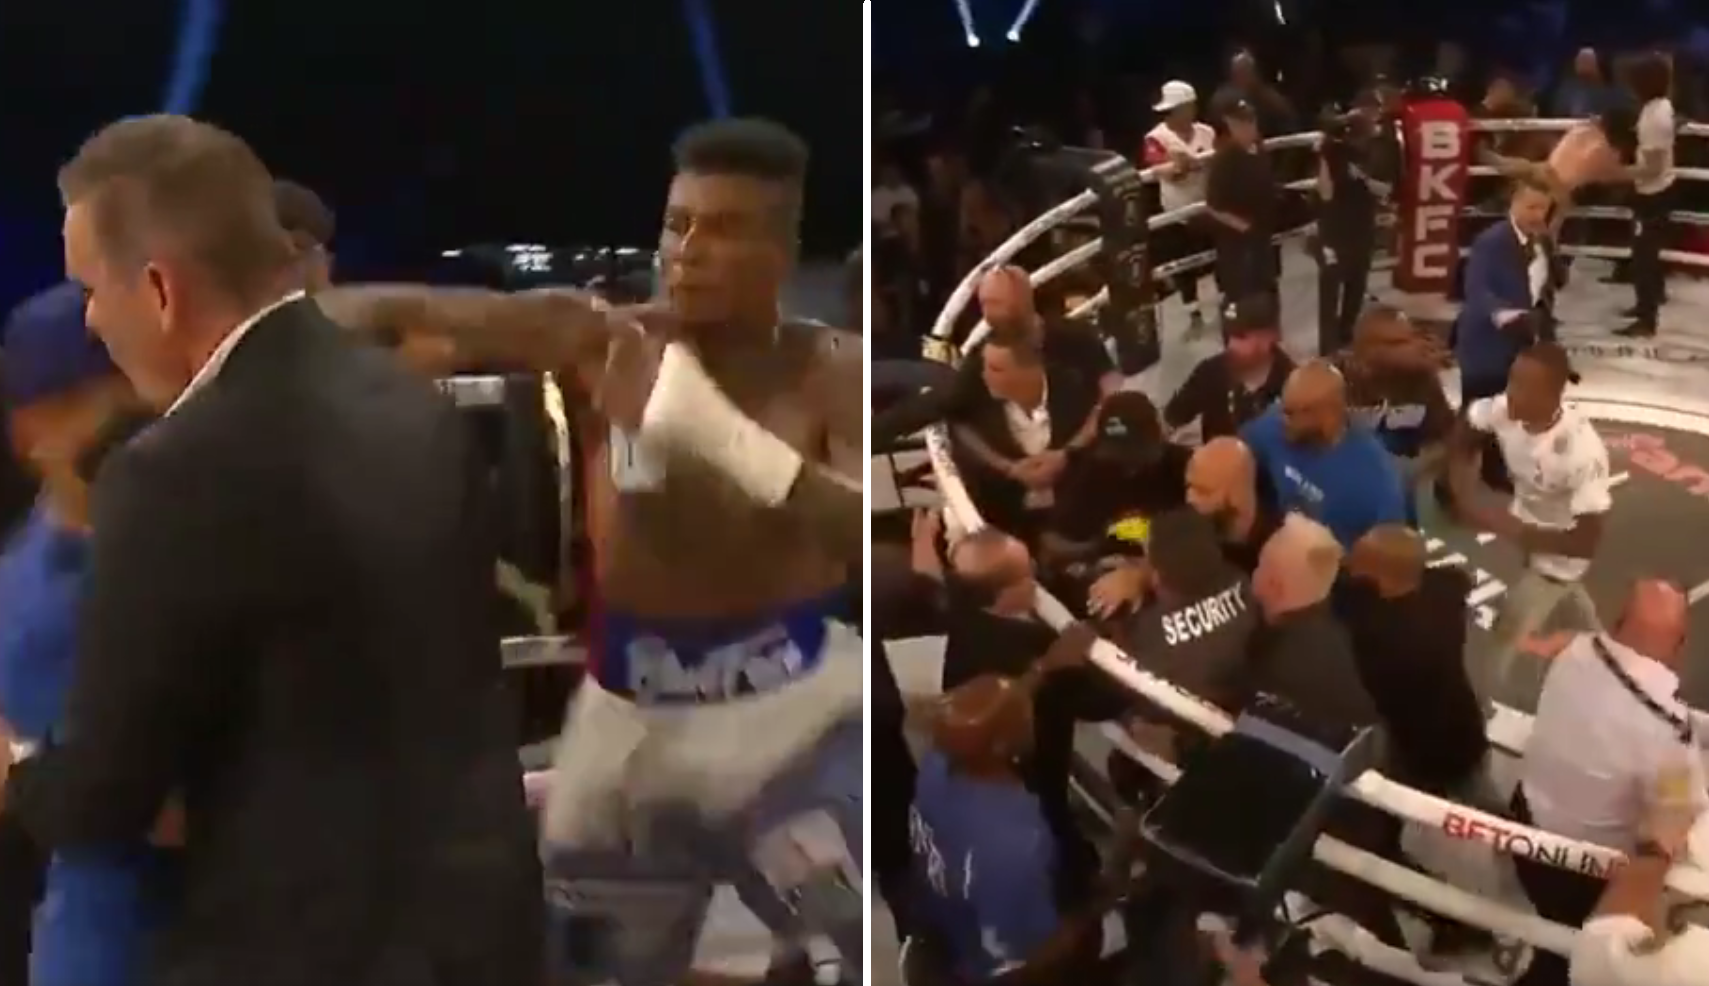 (VIDEO) Awantura podczas gali walk na gołe pięści. Kibic wszedł na ring i został pobity przez rapera